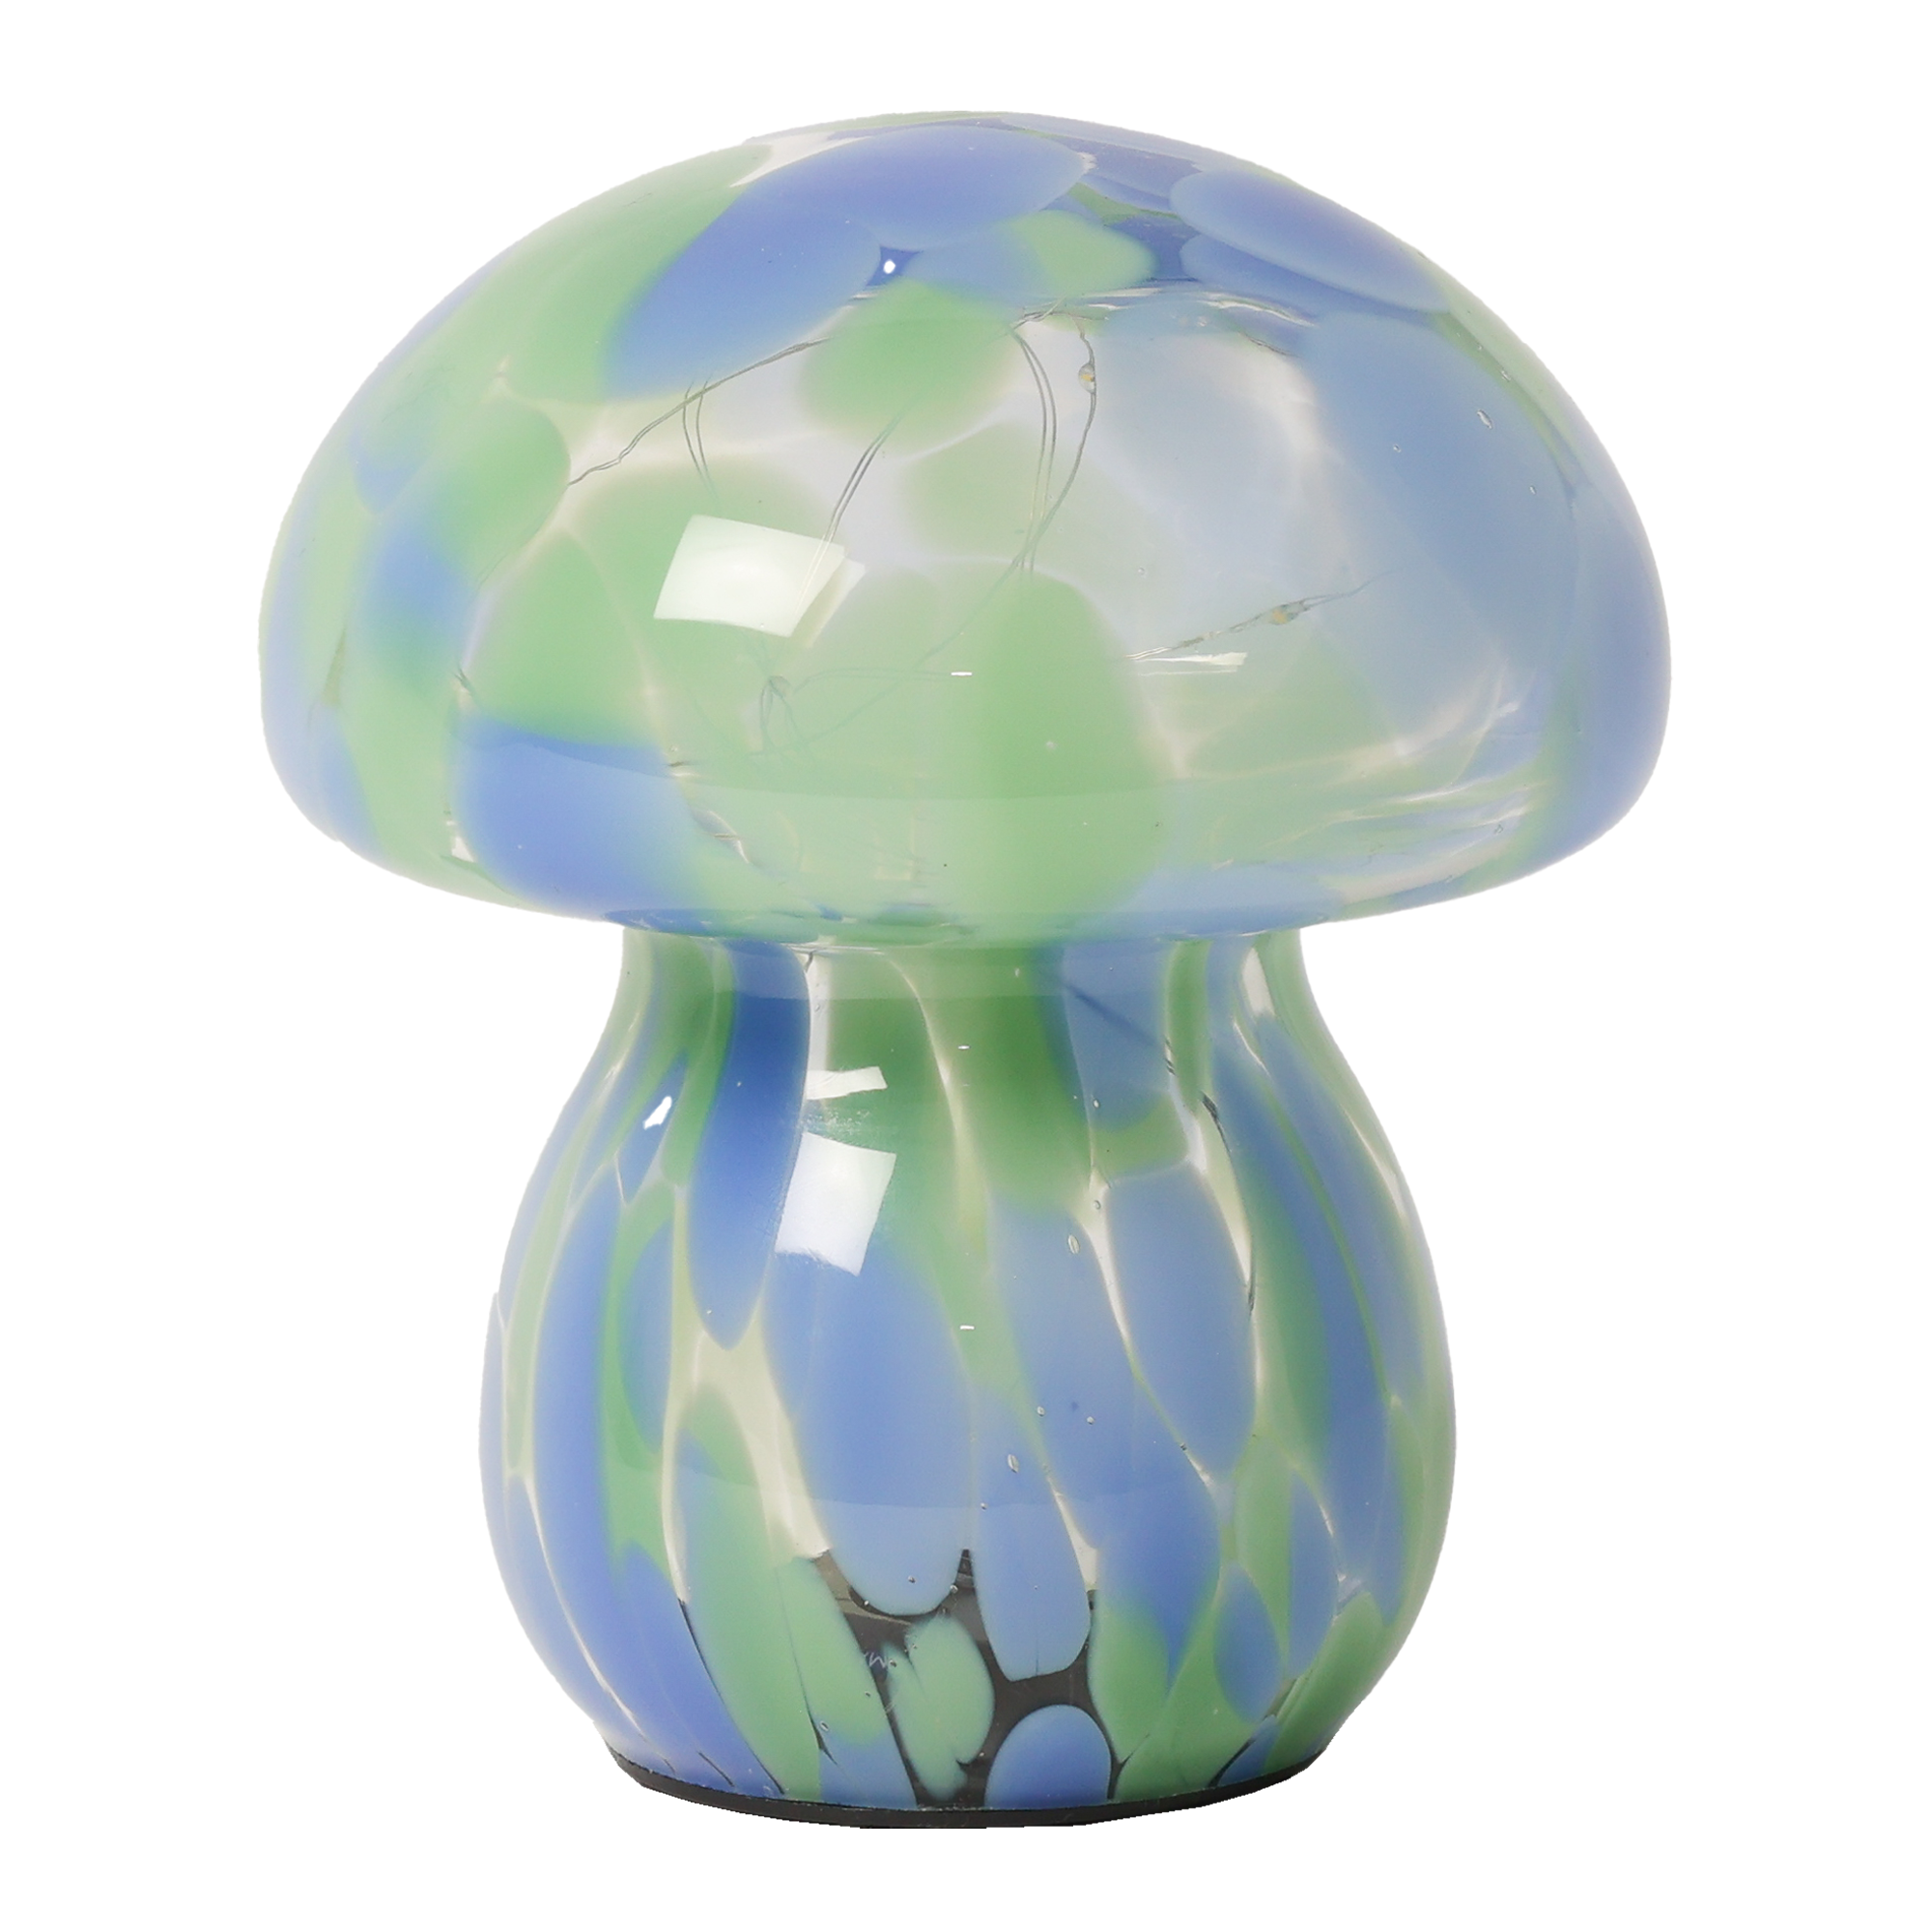 Billede af Mushroom lampe i glas, grøn/blå hos Naga.dk